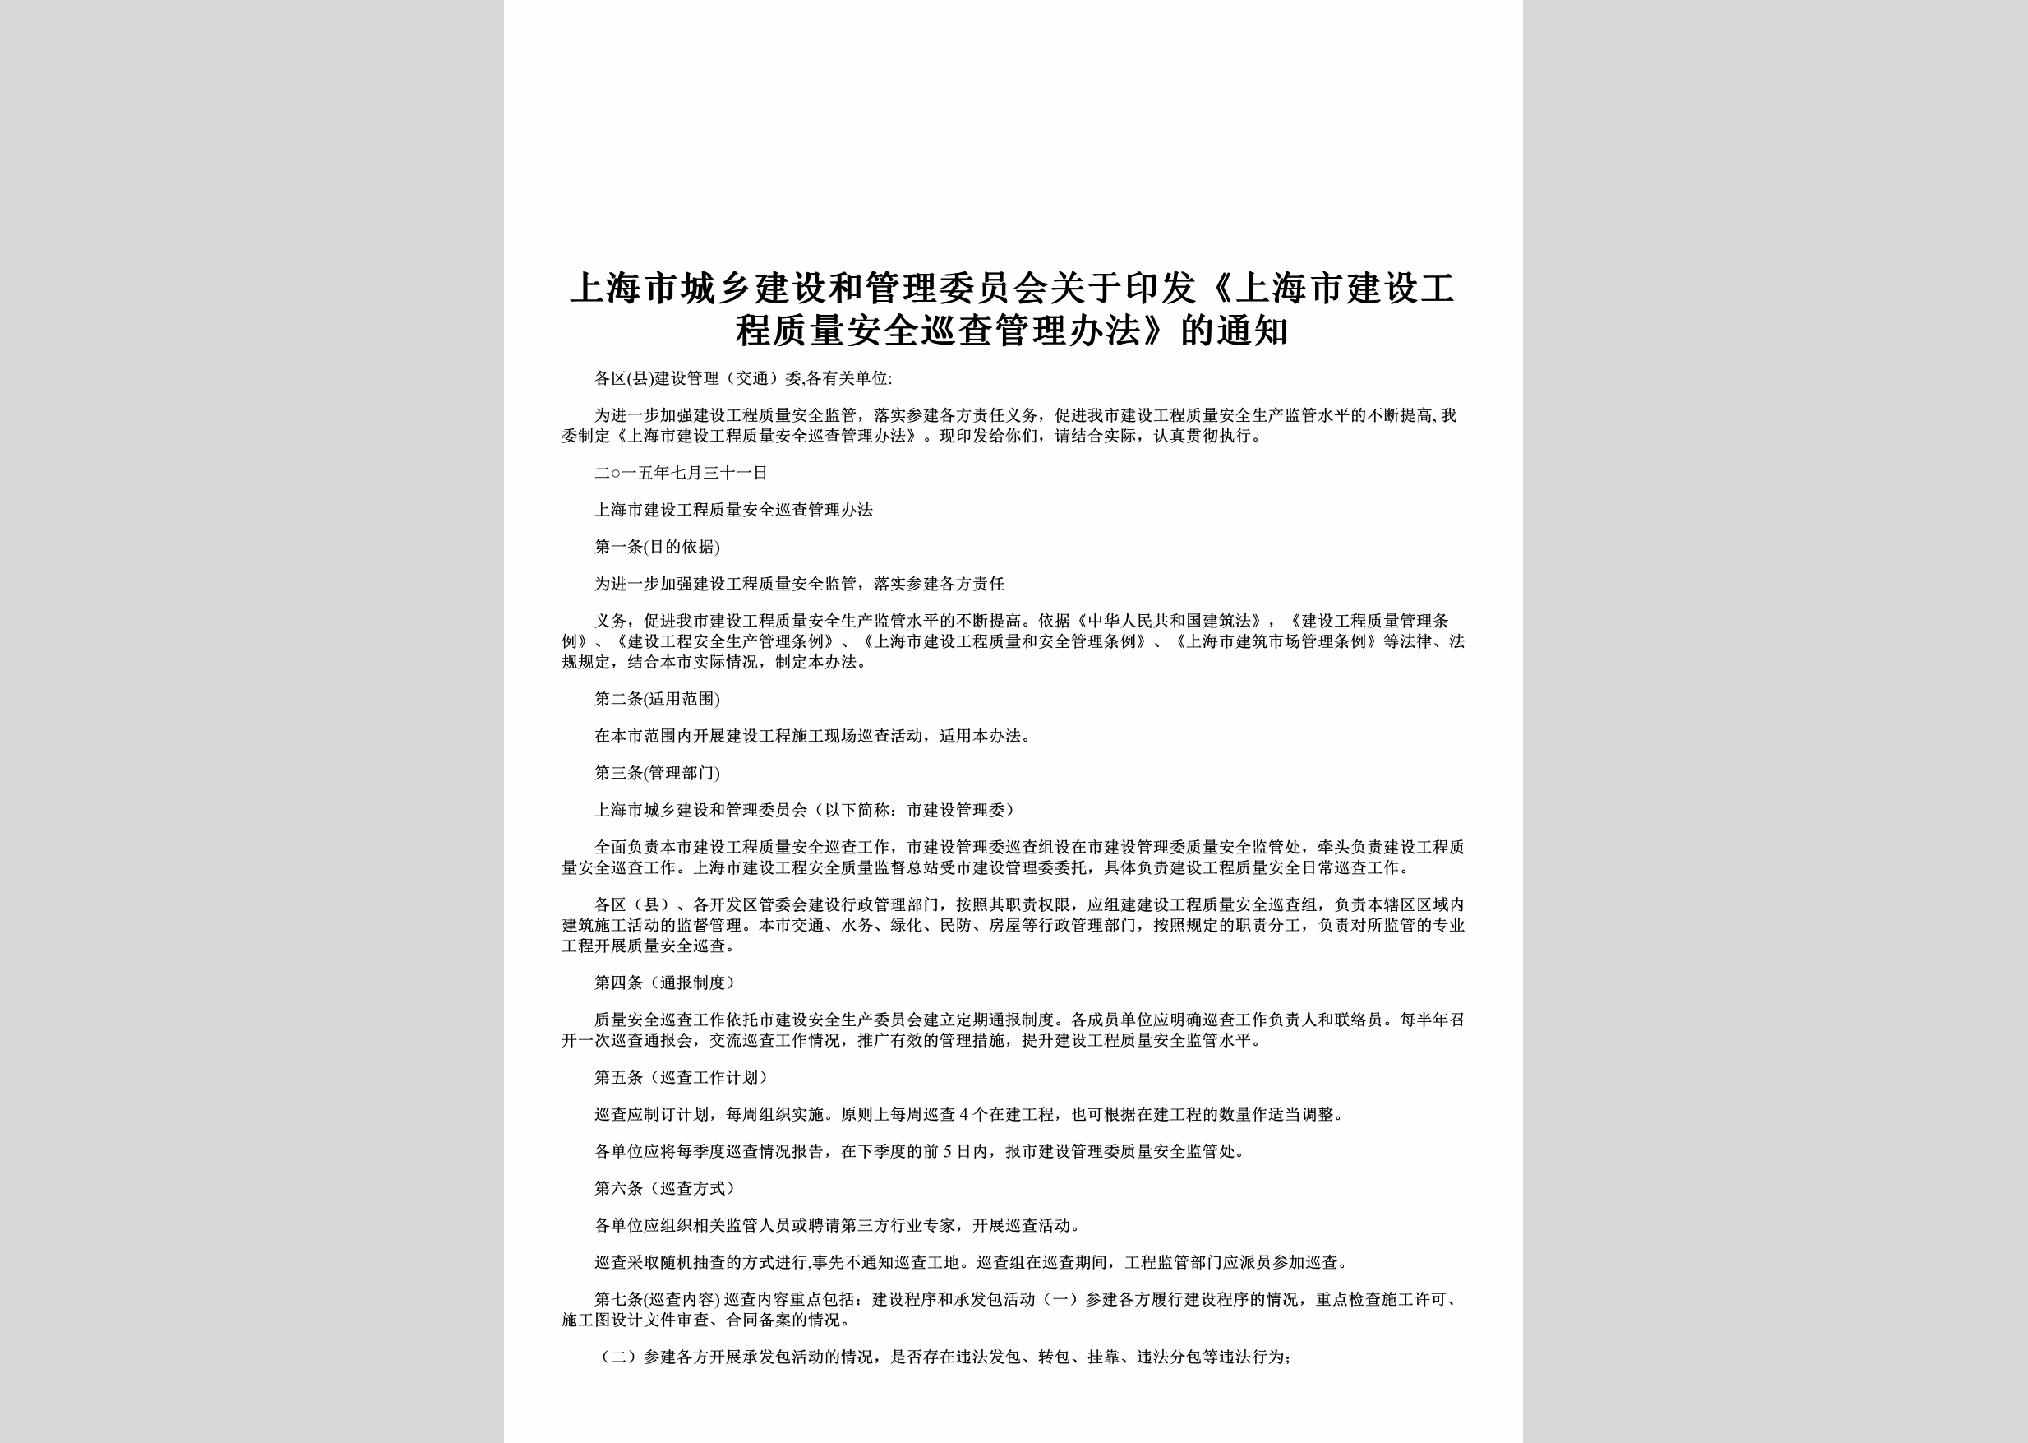 SH-GCZLXCTZ-2015：关于印发《上海市建设工程质量安全巡查管理办法》的通知